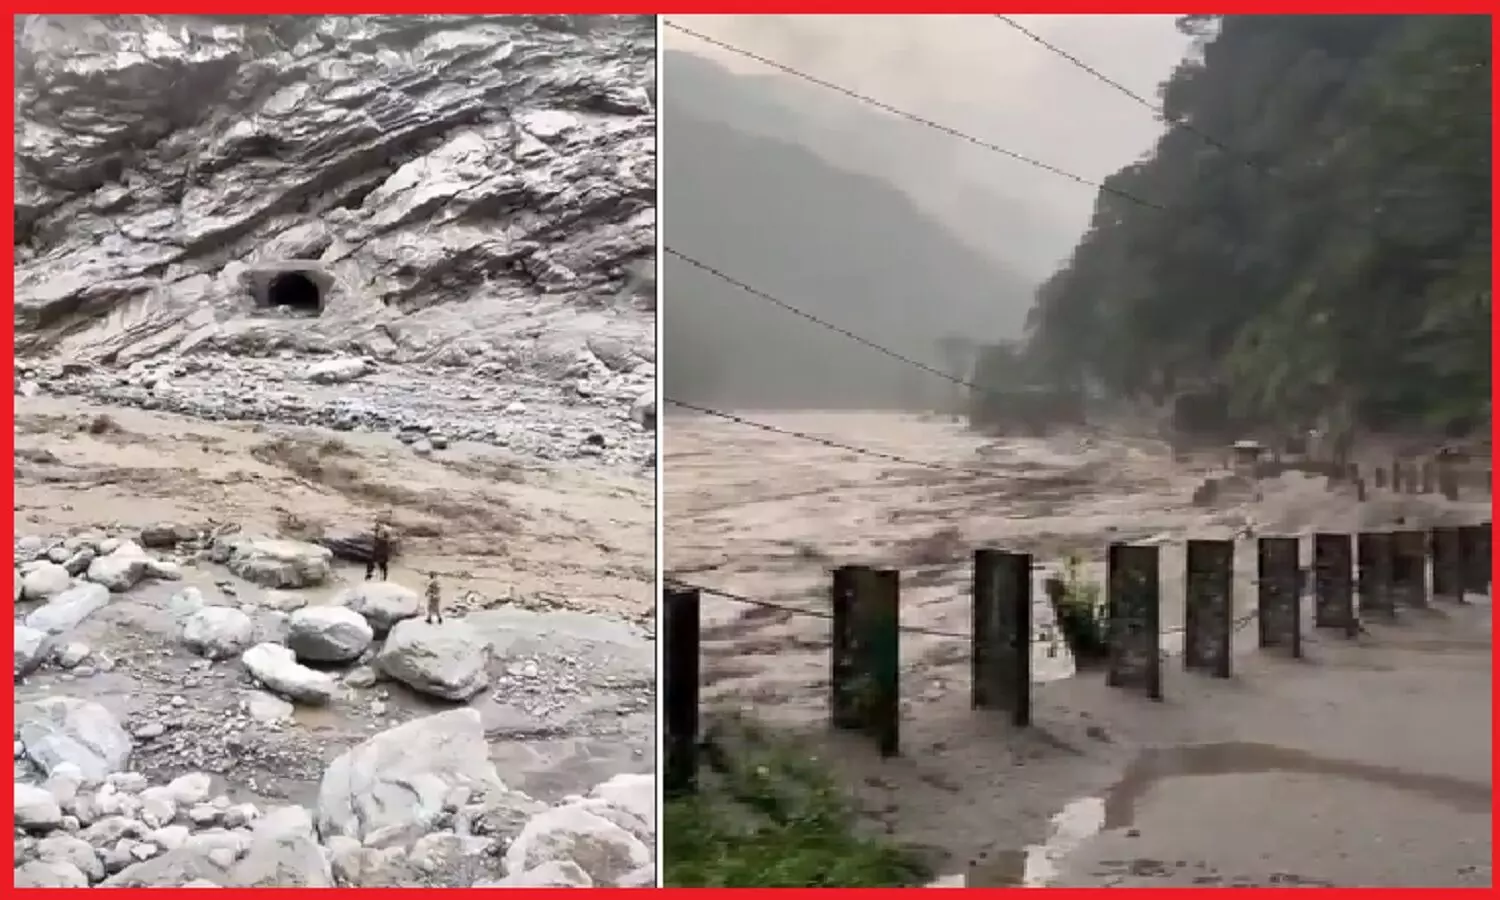 ग्लेशियर में बाढ़ के प्रकोप का कारण क्षेत्रीय वार्मिंग, सिक्किम इसका ताज़ा उदाहरण जहां हो चुकी हैं 40 से ज्यादा मौतें